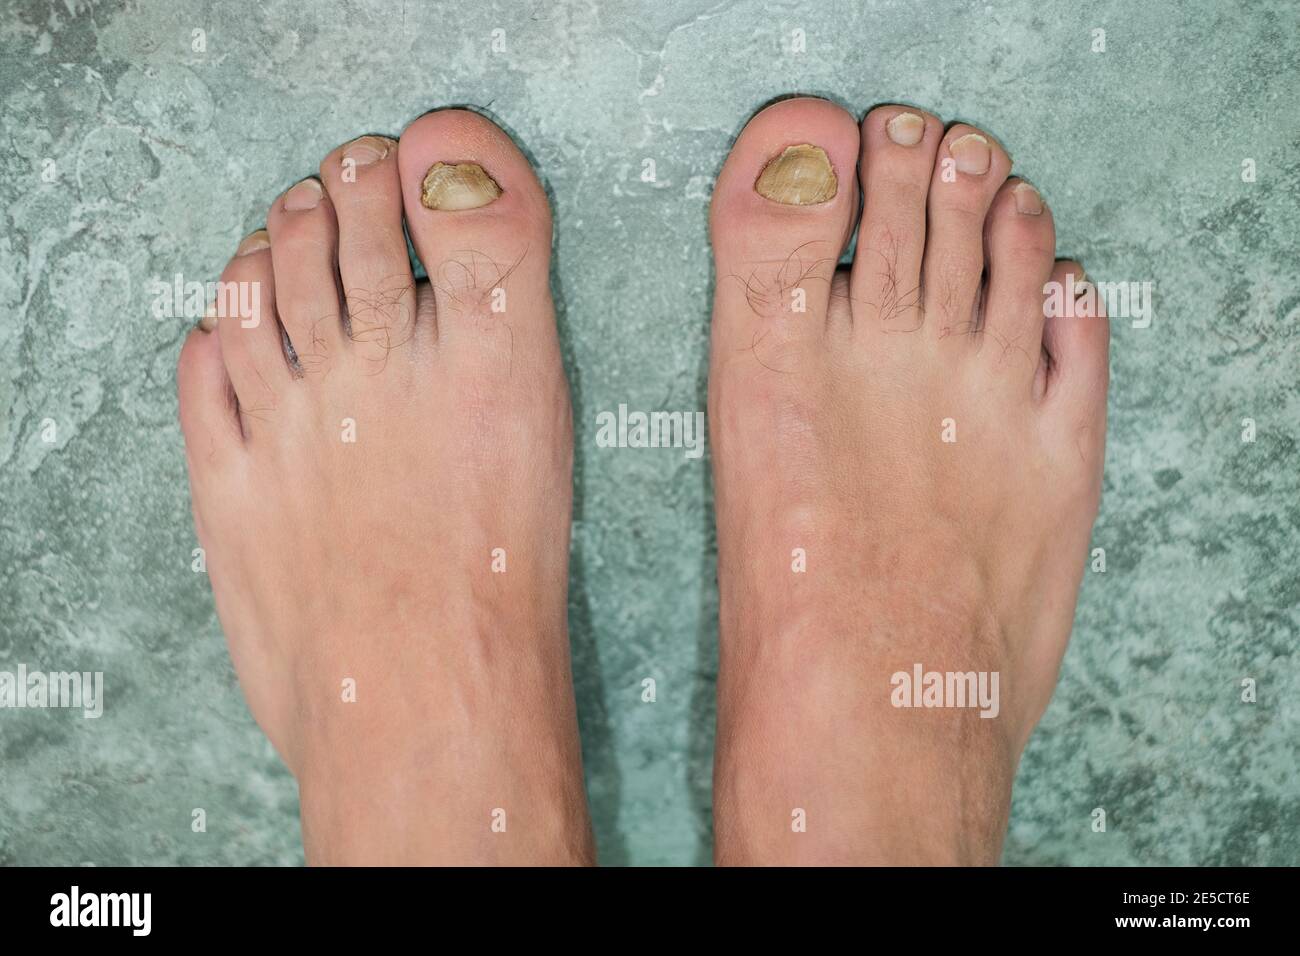 Giovane uomo a piedi nudi dita con onycho malato micosi unghie, dermatologico medico malattia,problema di salute Foto Stock